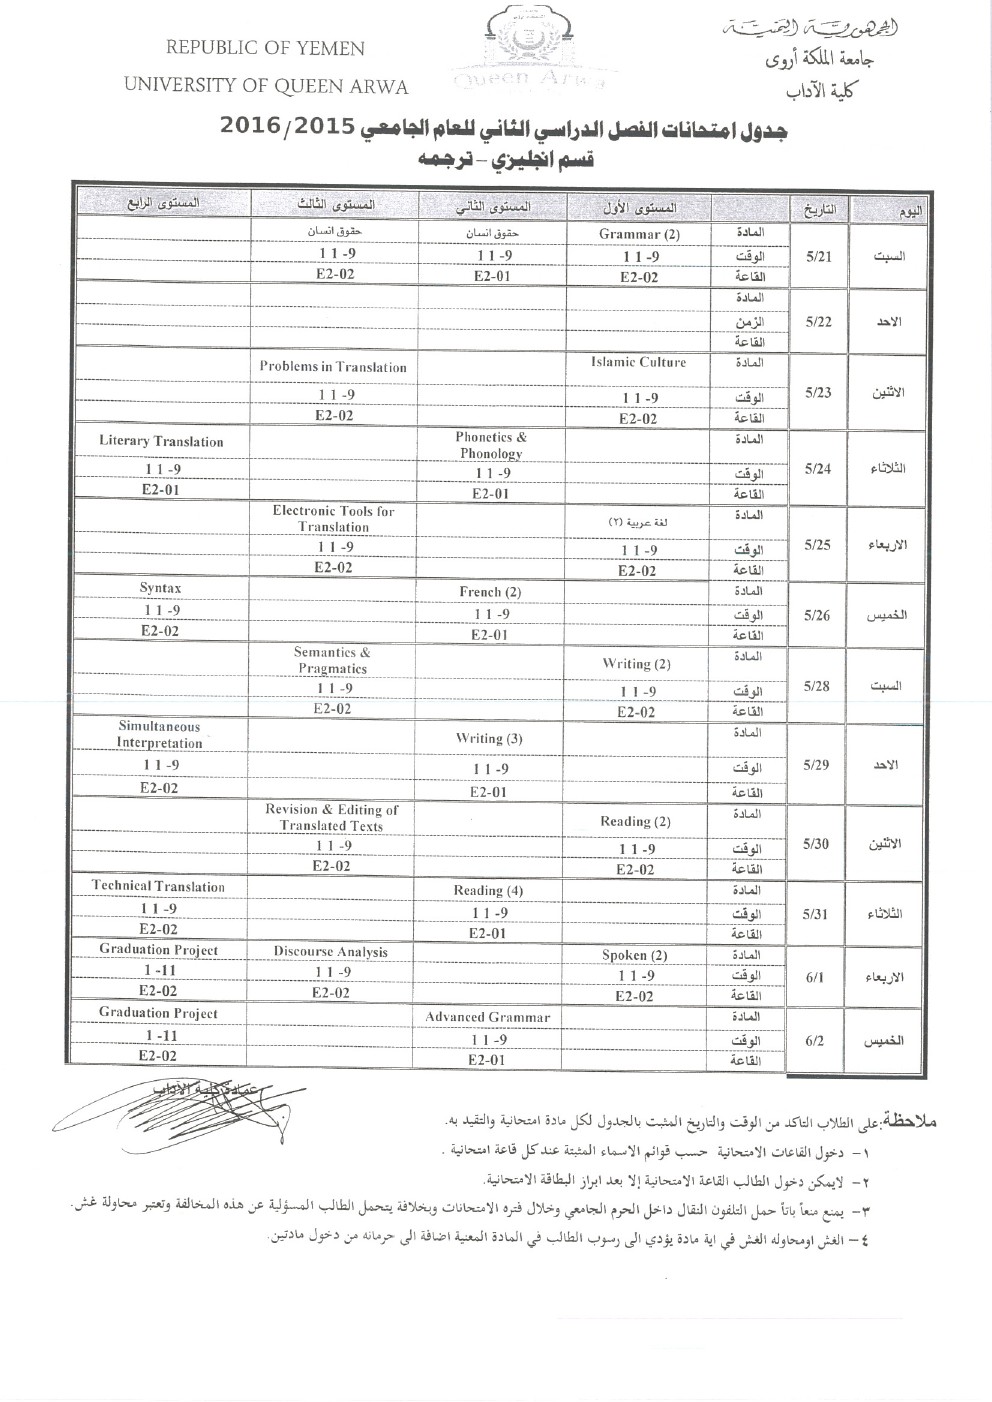 كلية الاداب  - جدول امتحانات الفصل الدراسي الثاني للعام 2015-2016